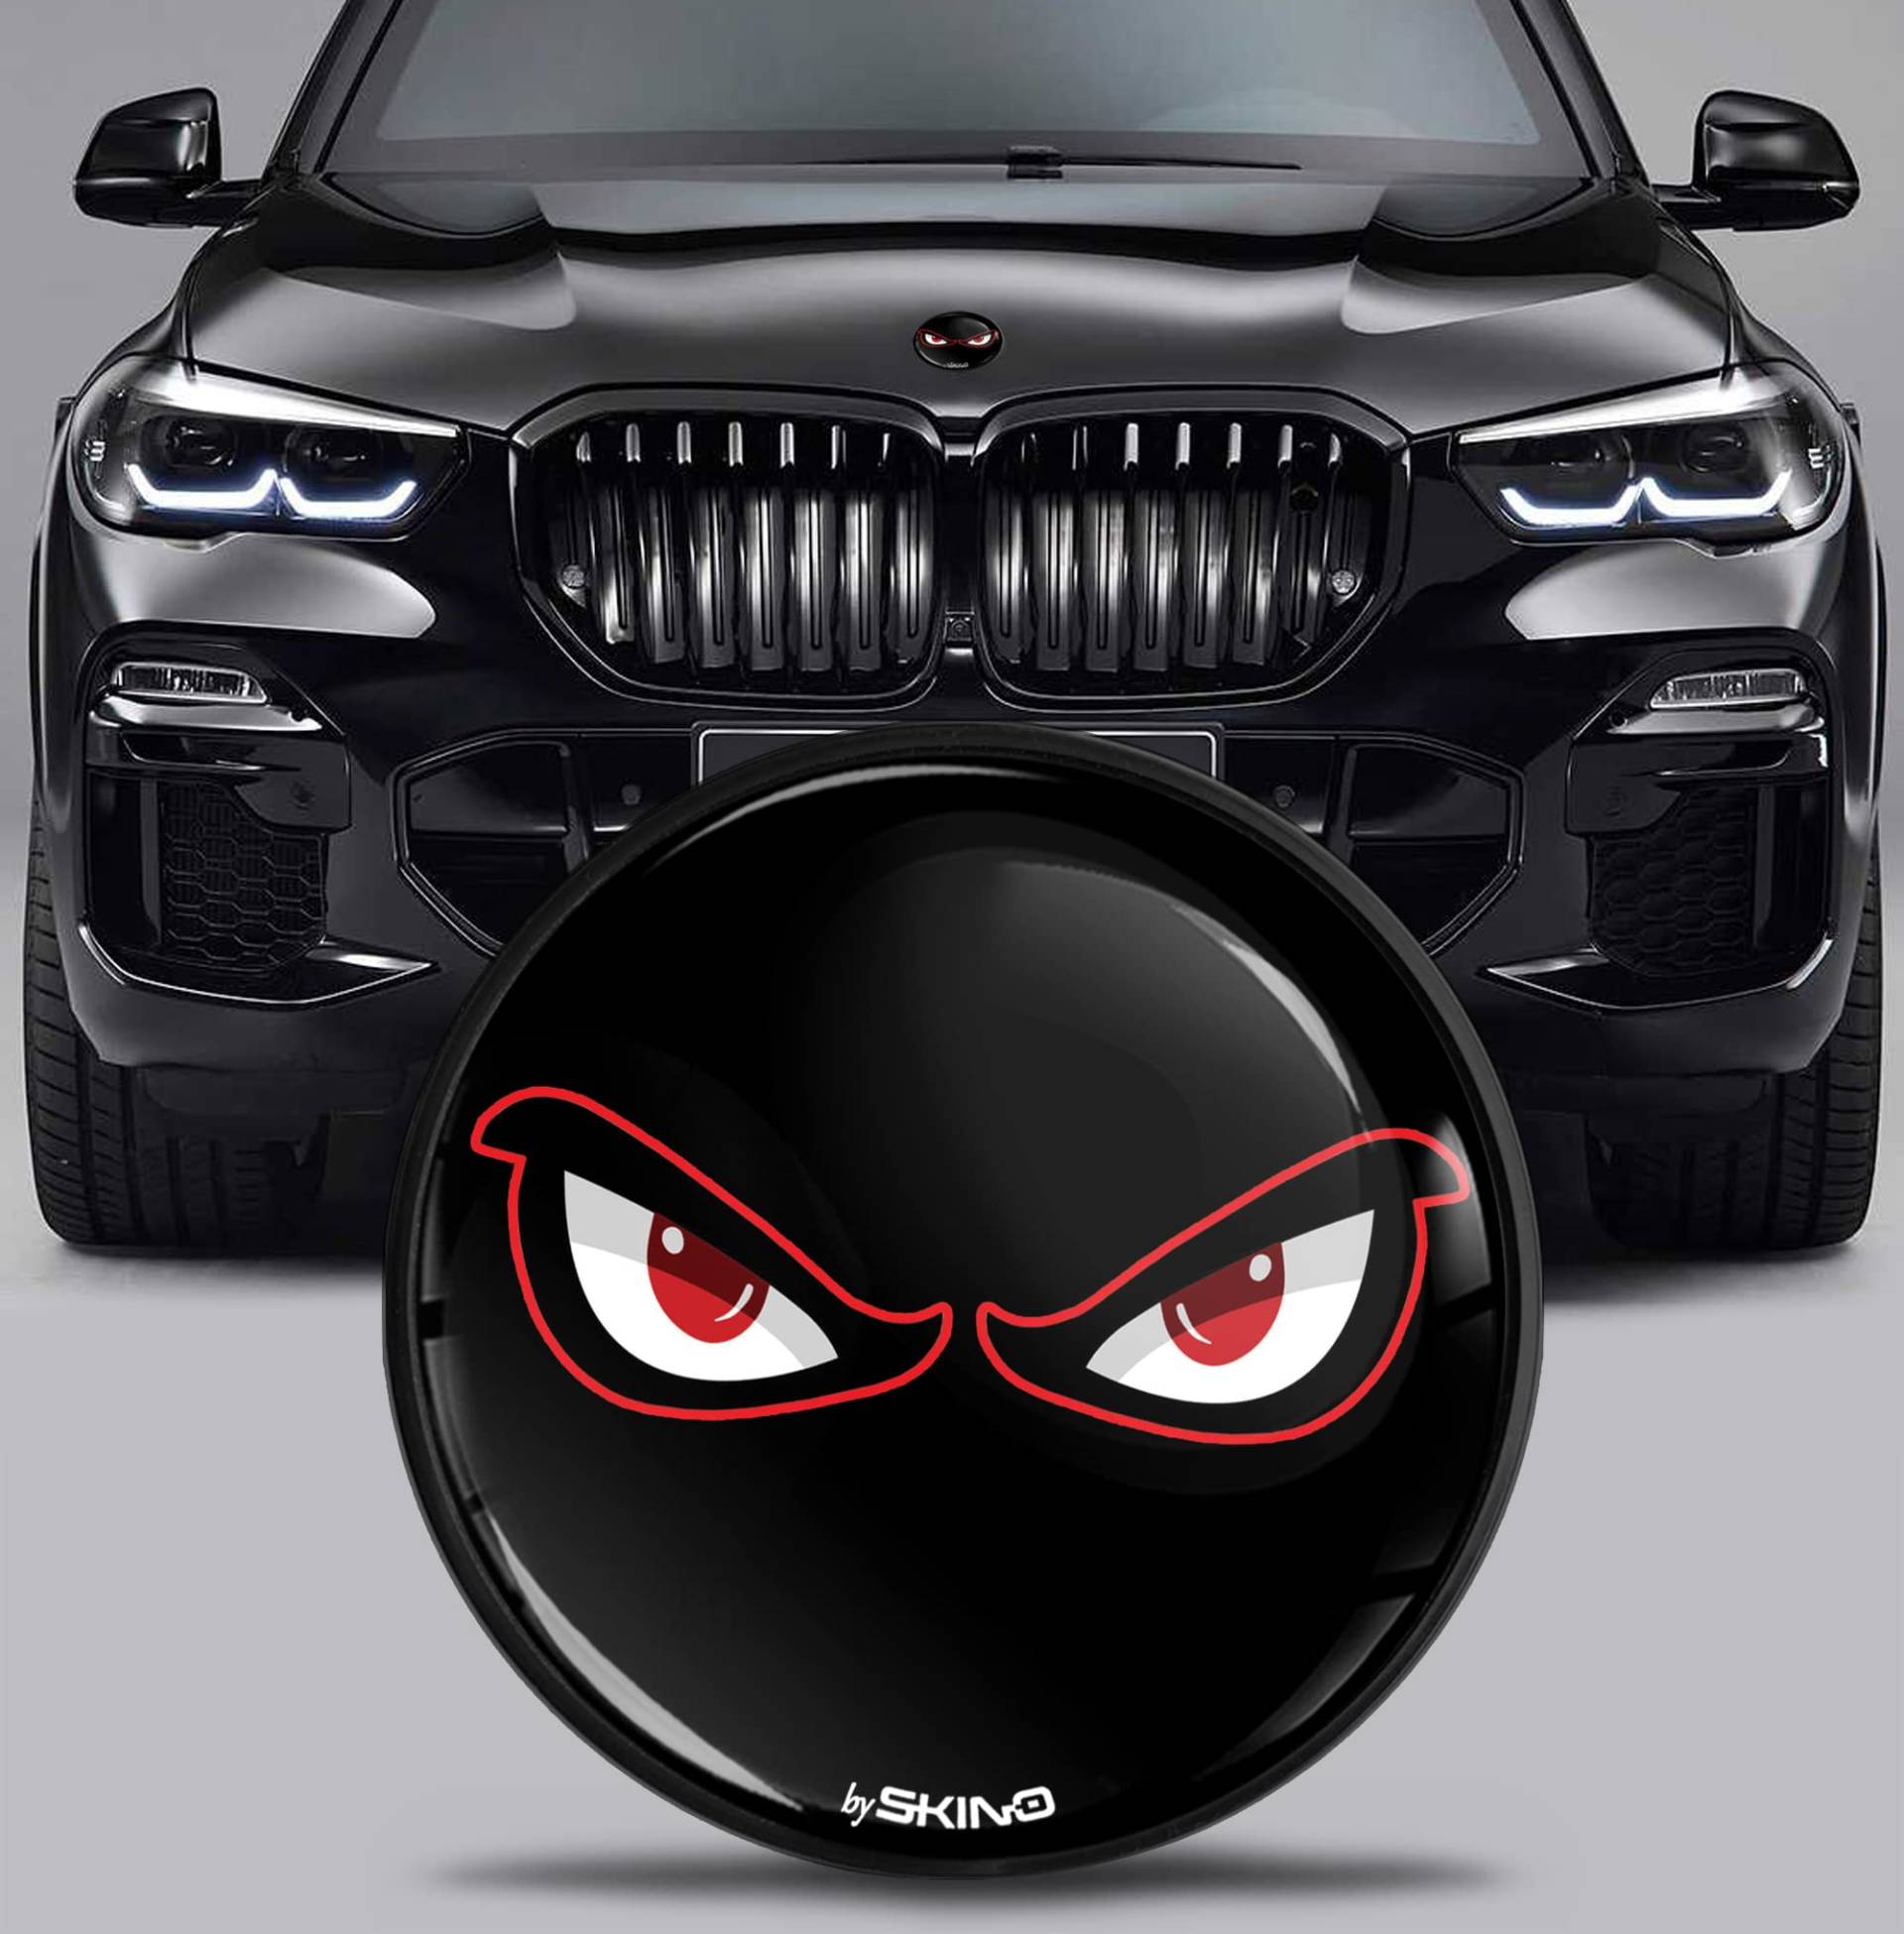 SkinoEu Kompatibel mit BMW Emblem Plakette 51767288752 82mm Durchmesser für Motorhaube/Kofferraum 1er 2er 3er 4er 5er 7er 8er X1 X2 X3 X4 X5 X6 X7 No Fear Schwarz EX 9 von Skino